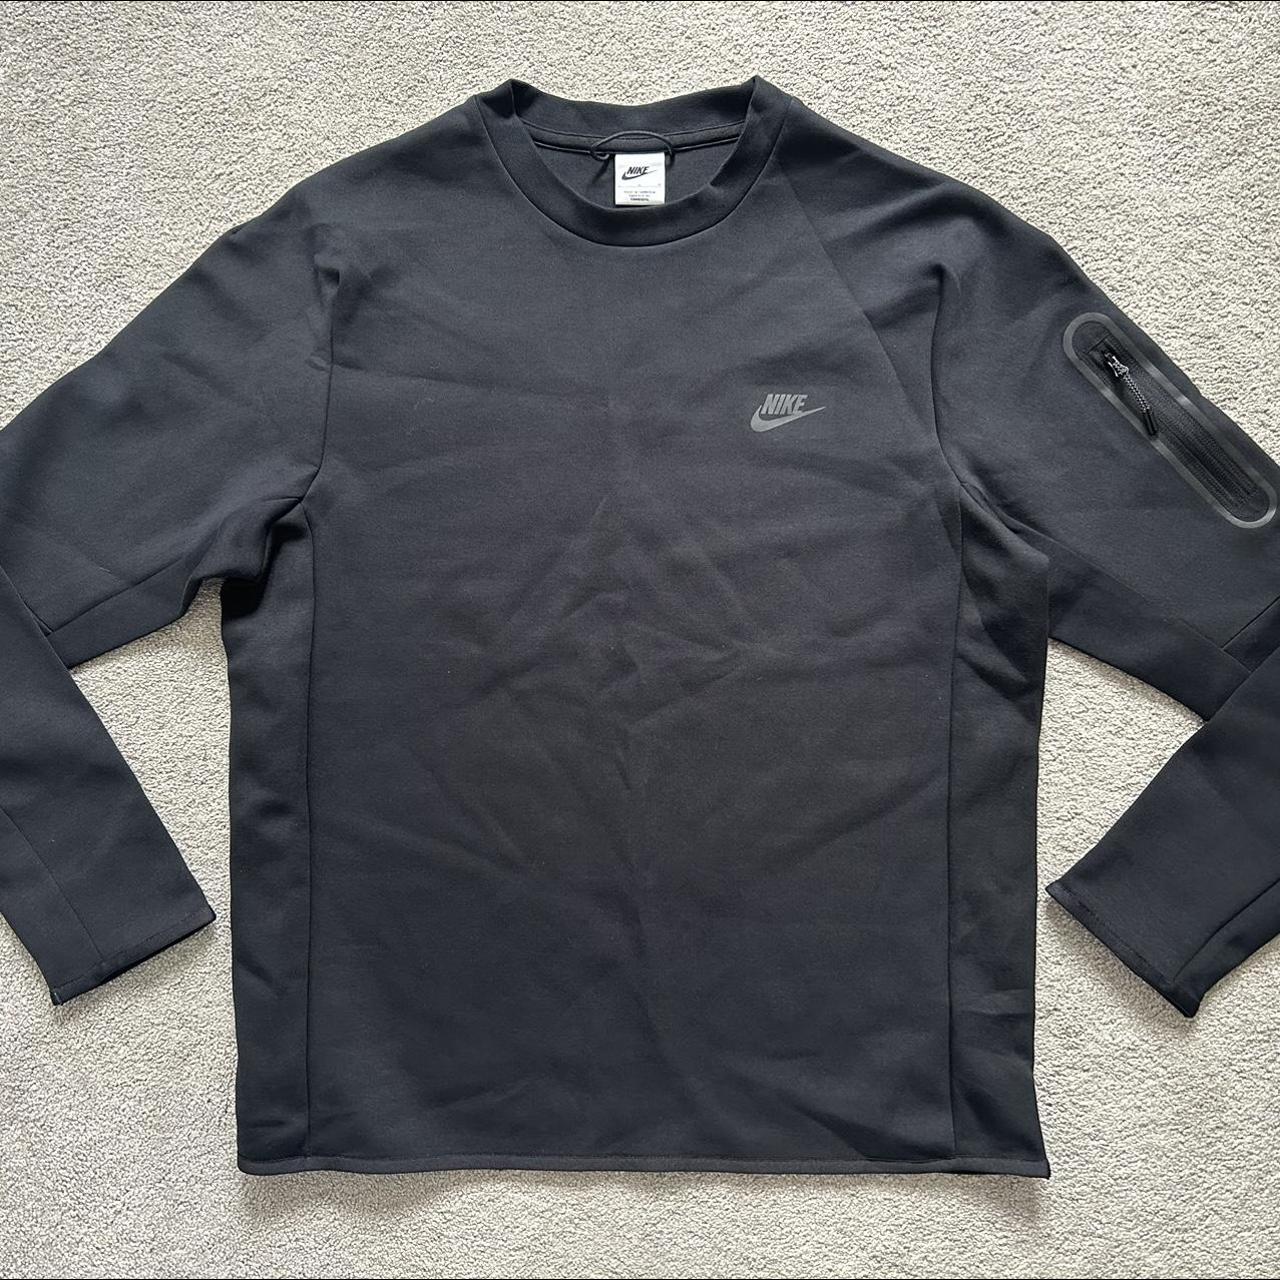 Nike Sportswear Tech Fleece Crew Sweatshirt Pullover... - Depop